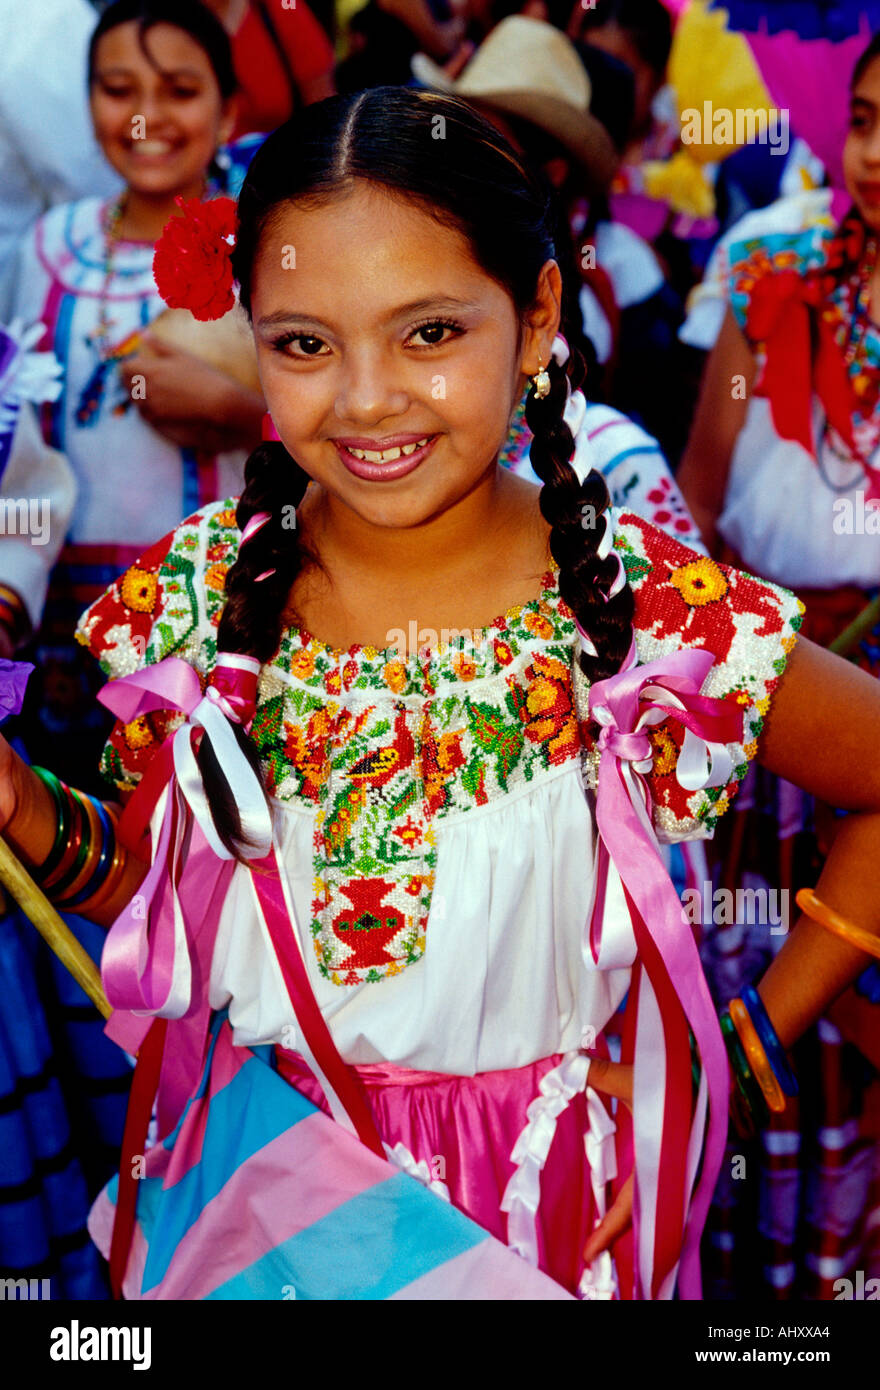 Mexican girl, mexicaine, fille, danseuse en costume, portrait, Festival Guelaguetza, Oaxaca, Oaxaca de Juarez, l'état d'Oaxaca, Mexique Banque D'Images